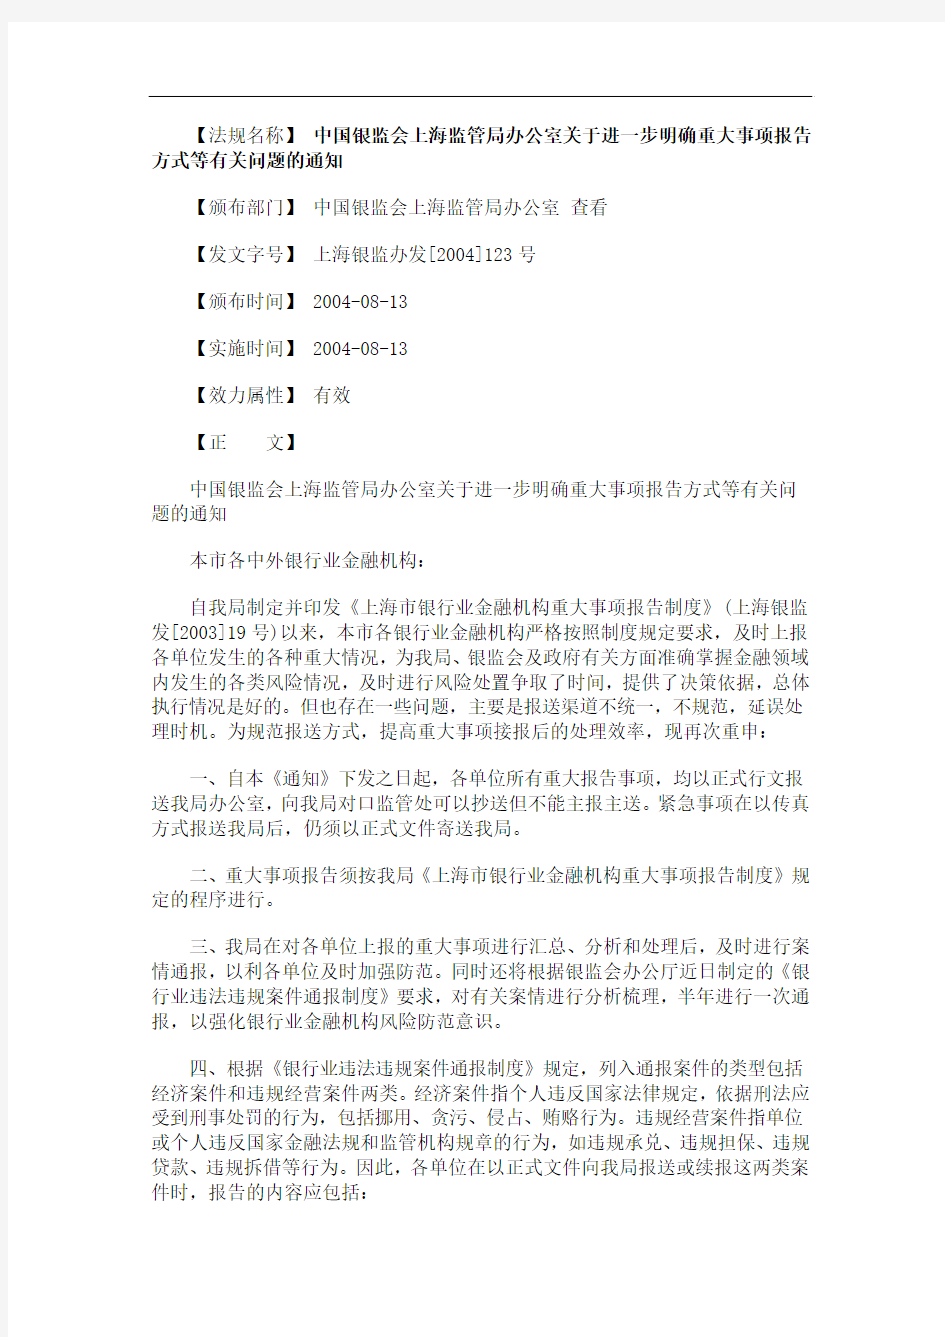 的通知中国银监会上海监管局办公室关于进一步明确重大事项报告方式等有关问题